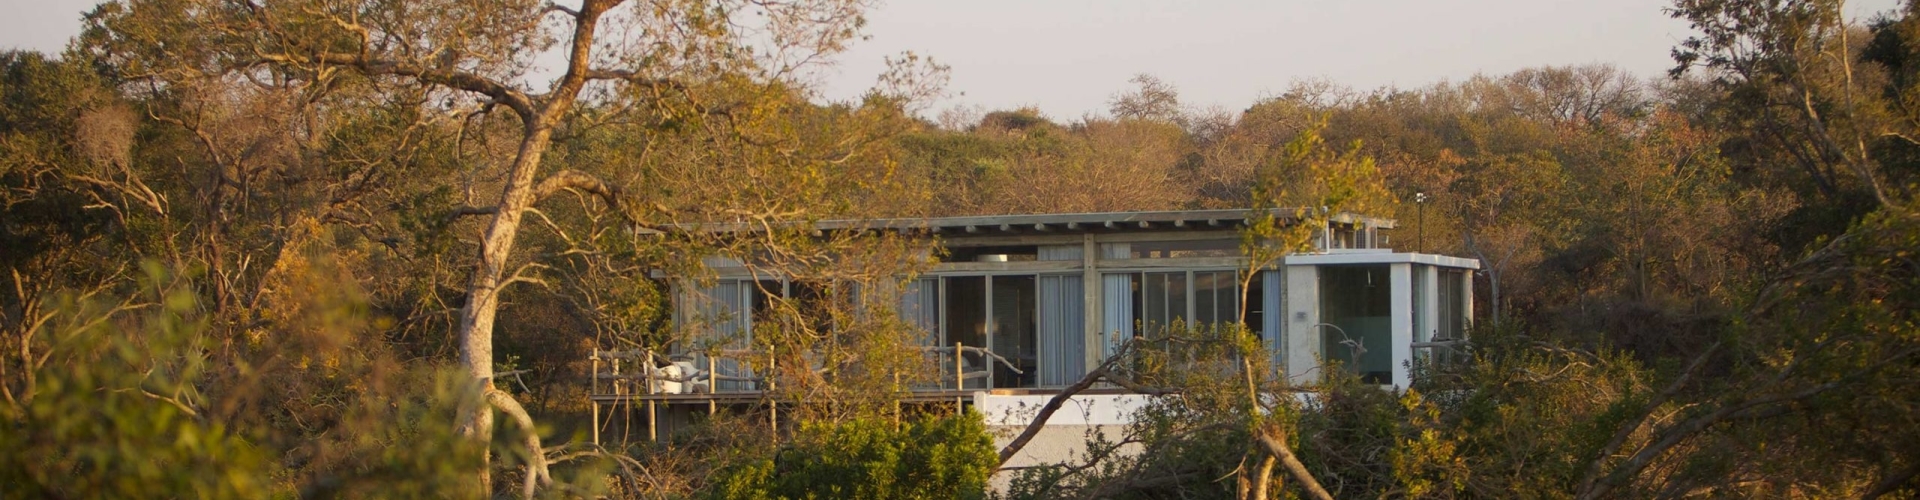 kapama-karula-lodge-big-five-safari-luxury-accommodation